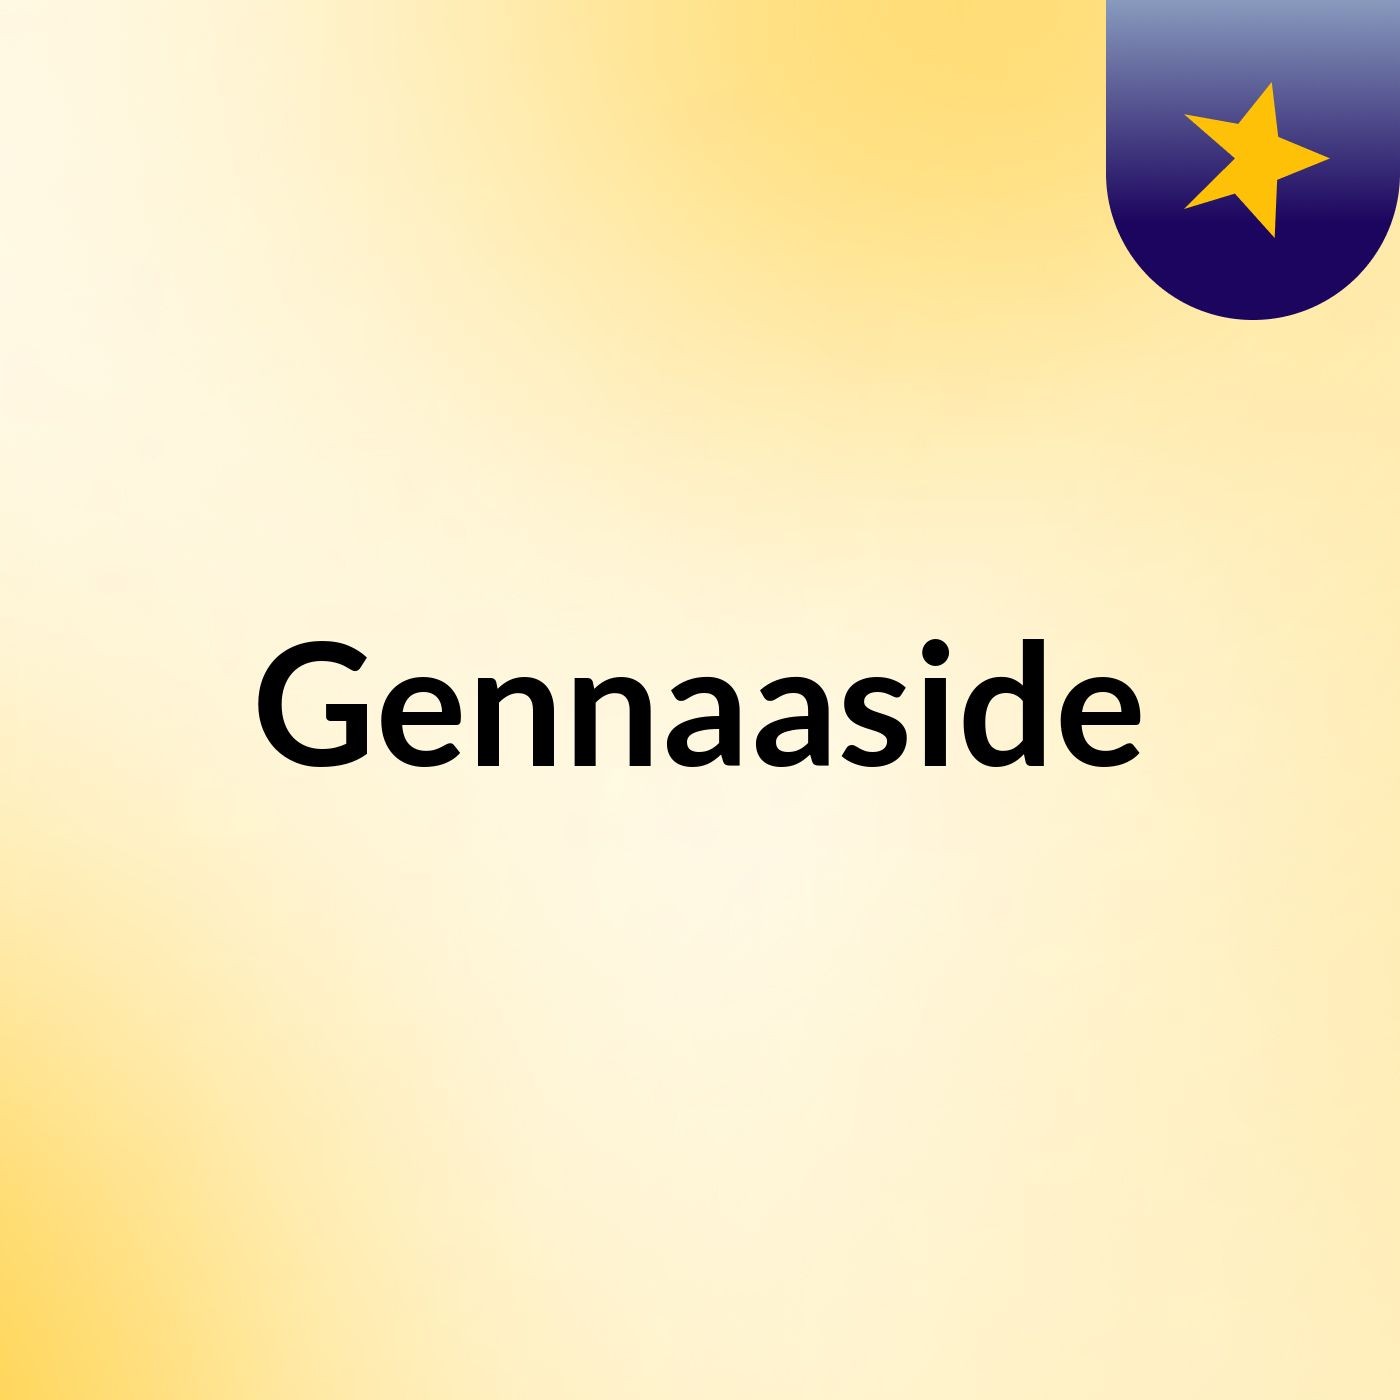 Episode 4 - Gennaaside